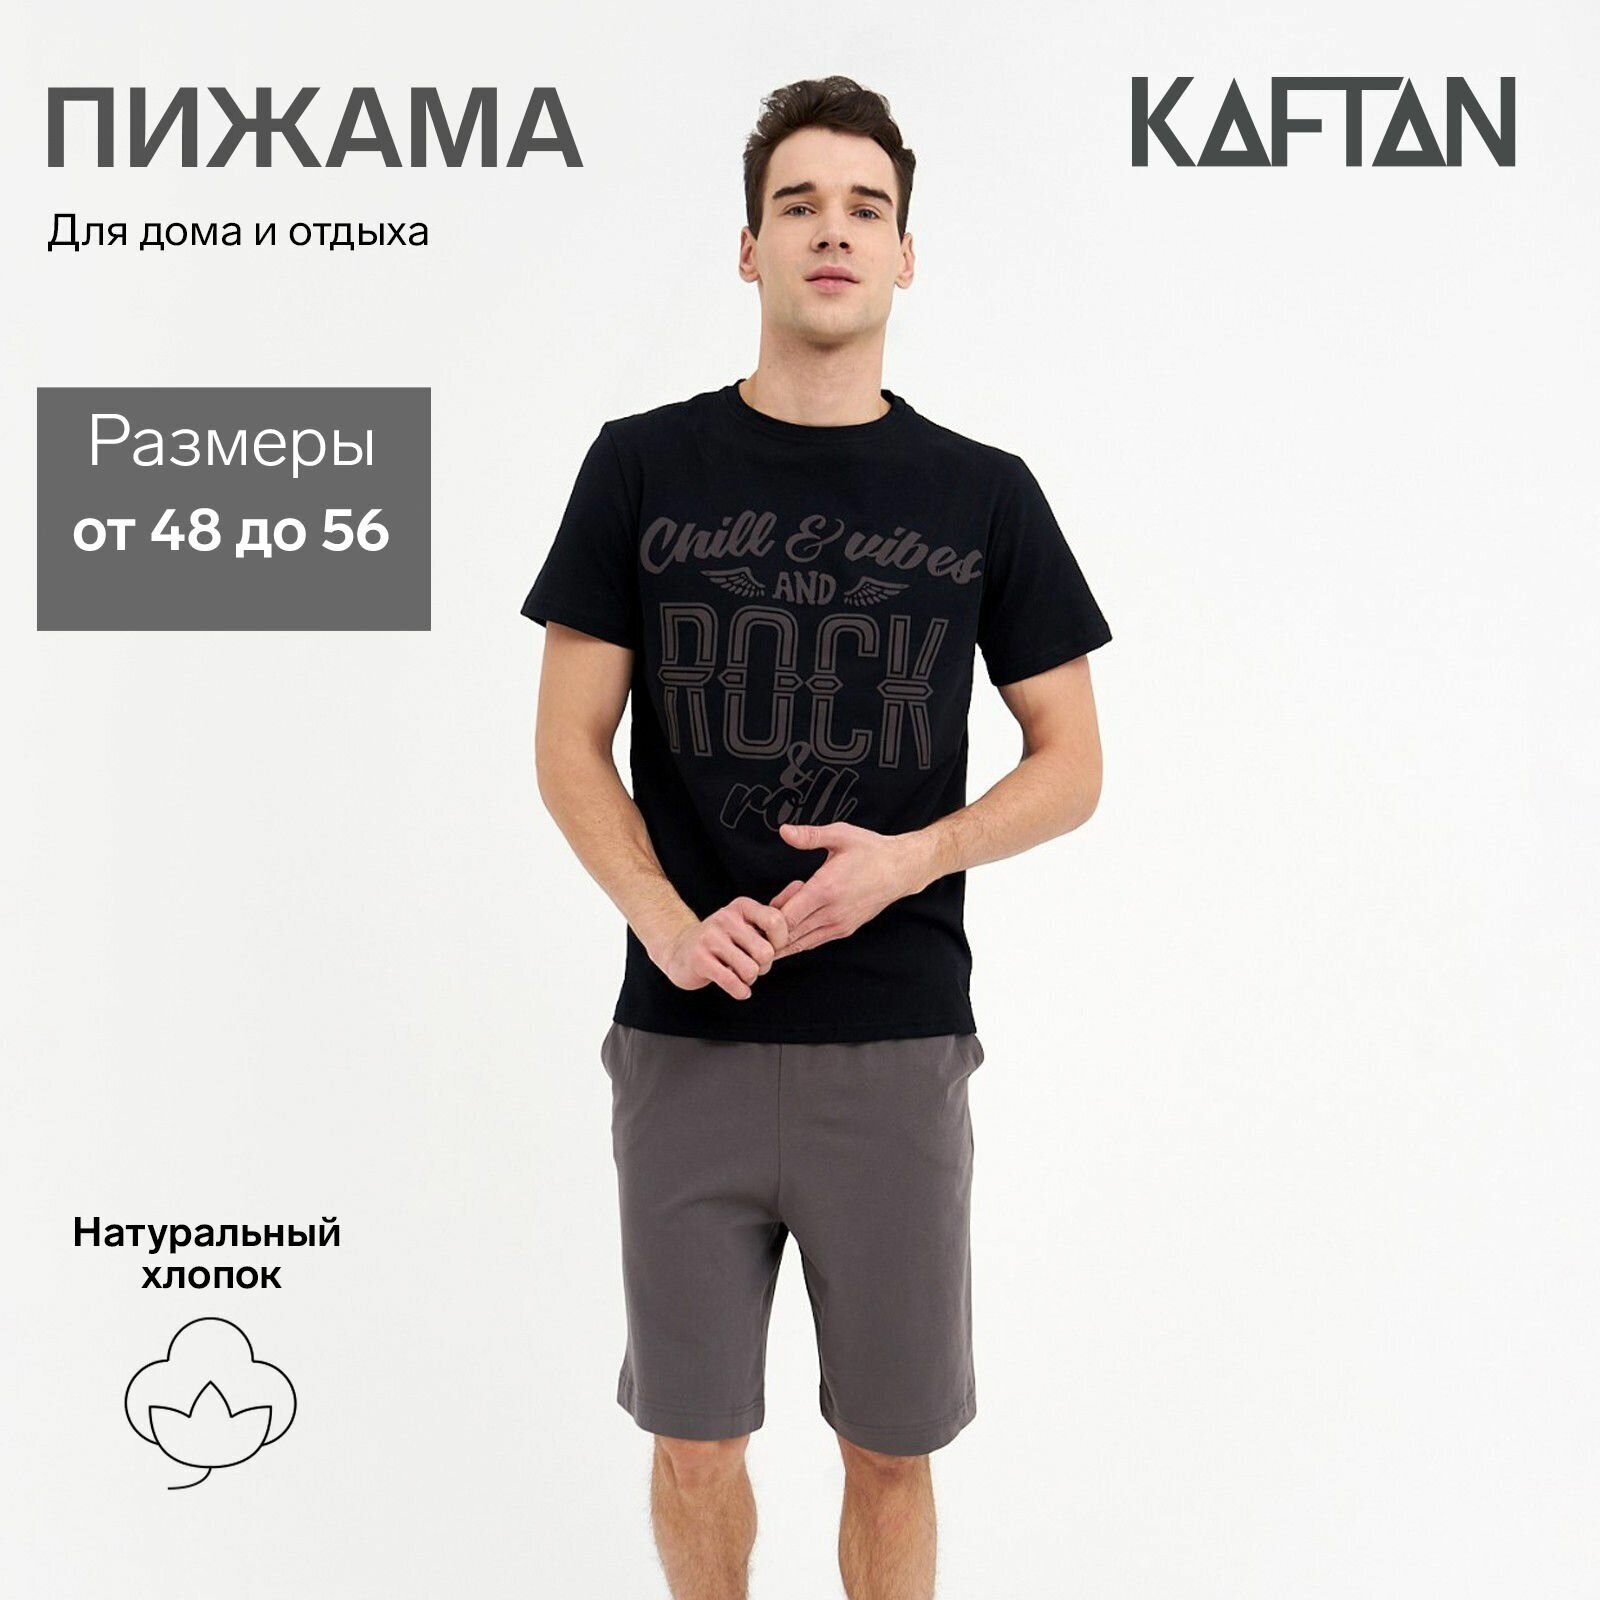 Пижама Kaftan, футболка, шорты, размер 52, черный - фотография № 1